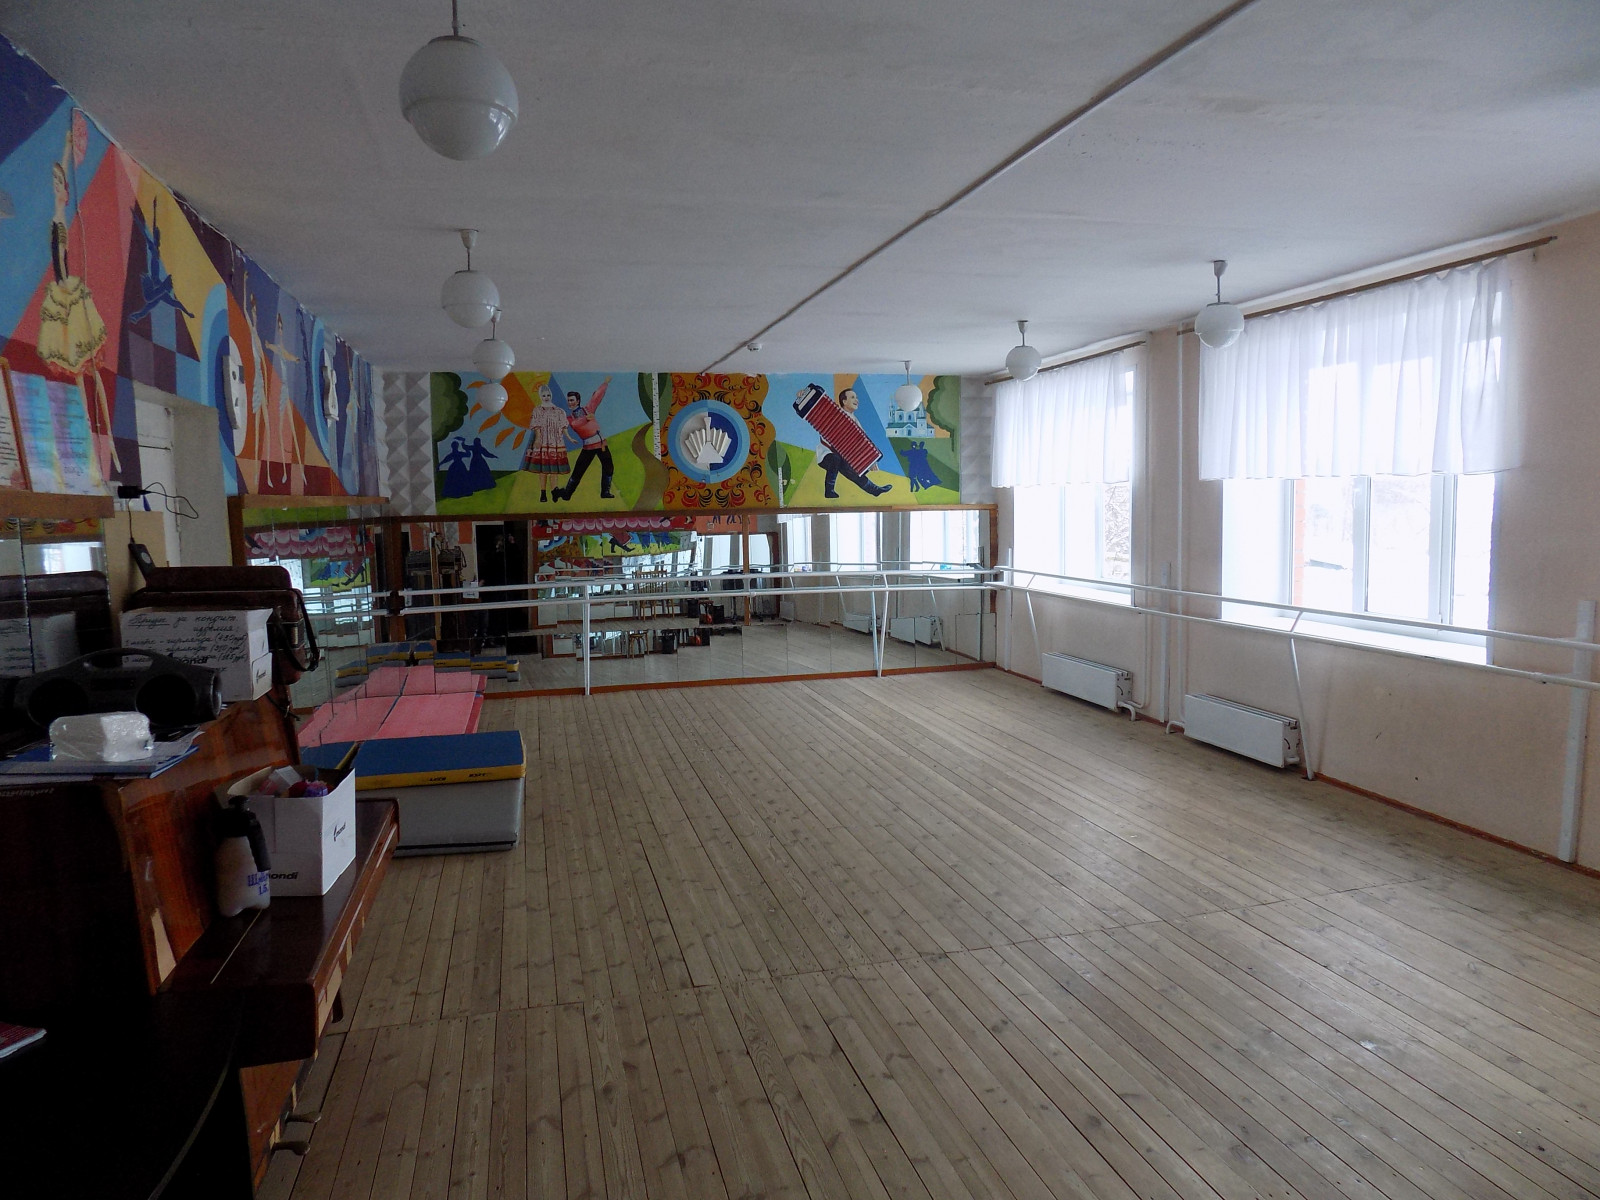 Починковскую детскую школу искусств отремонтируют за 20 млн рублей в Нижегородской области  - фото 1